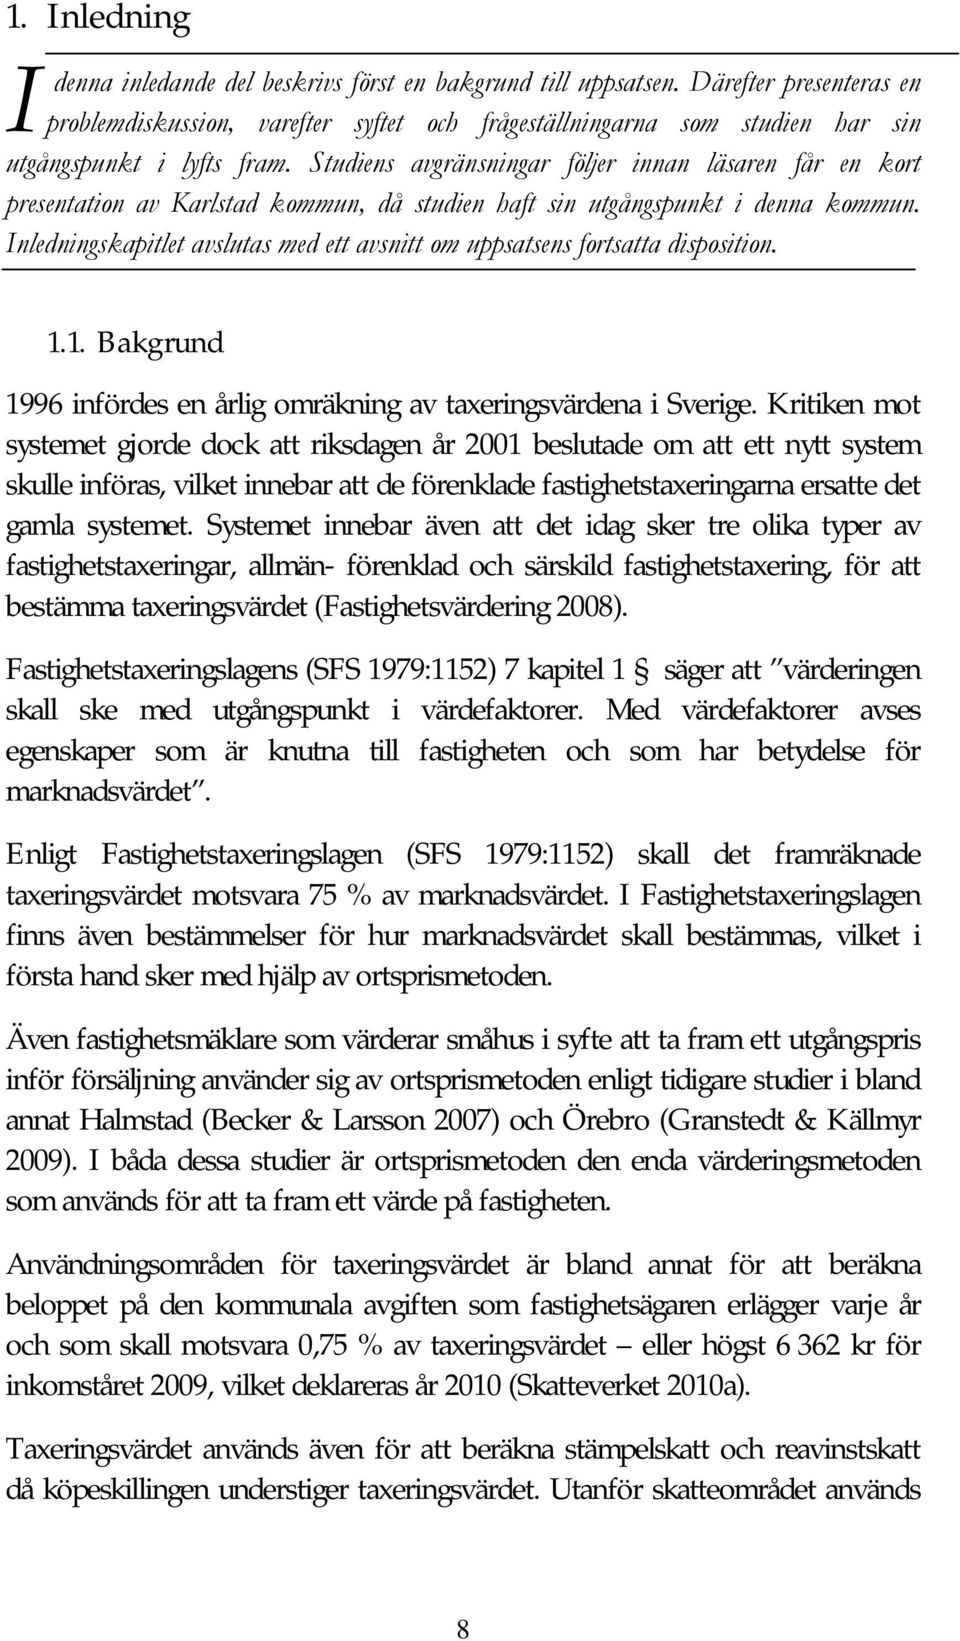 Studiens avgränsningar följer innan läsaren får en kort presentation av Karlstad kommun, då studien haft sin utgångspunkt i denna kommun.